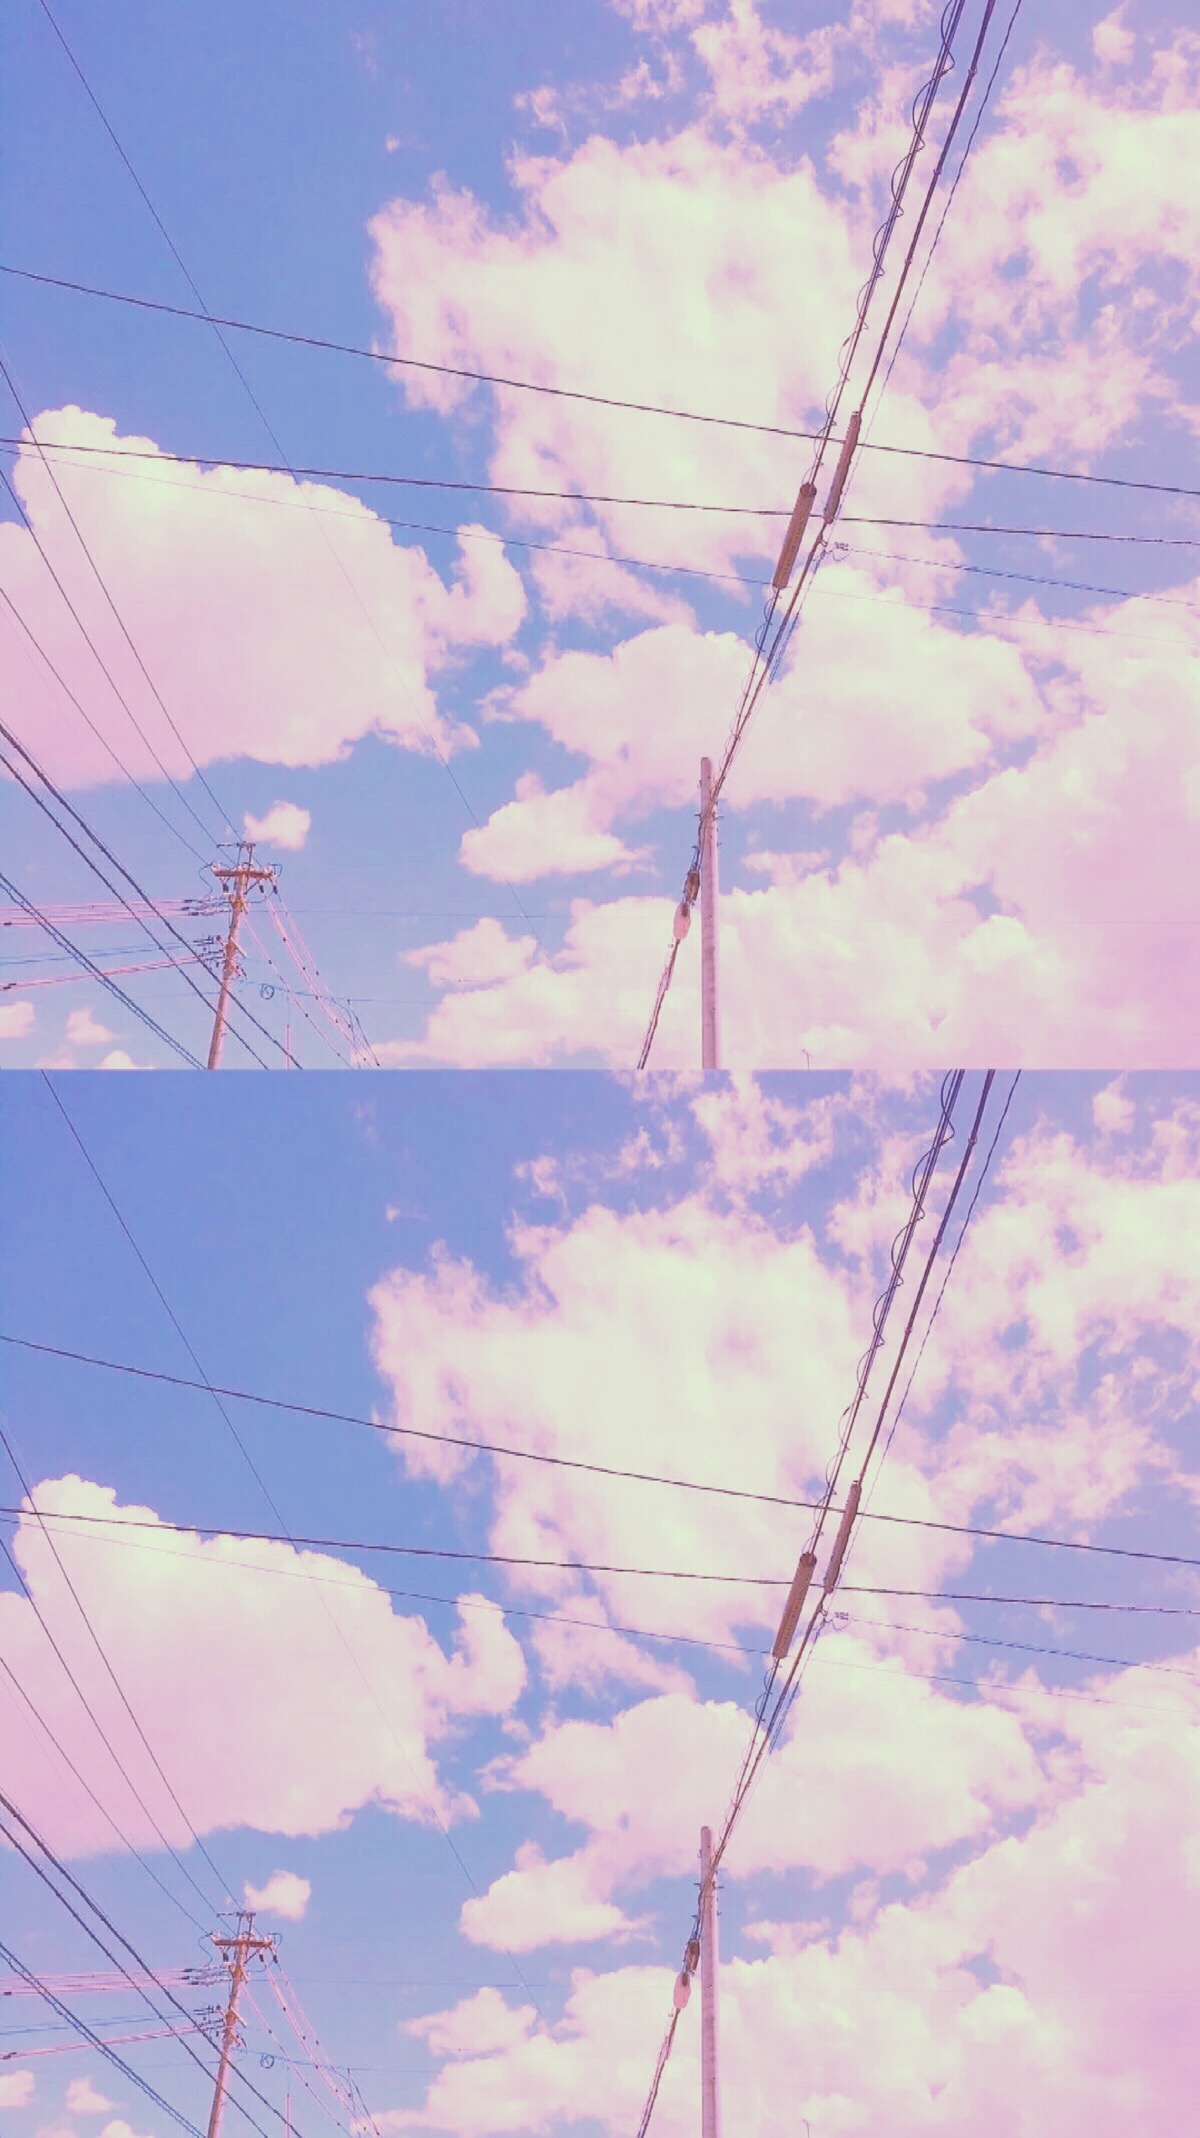 天空梦幻泡影少女心壁纸甜美小清新两张图片云朵图案拼接电线杆